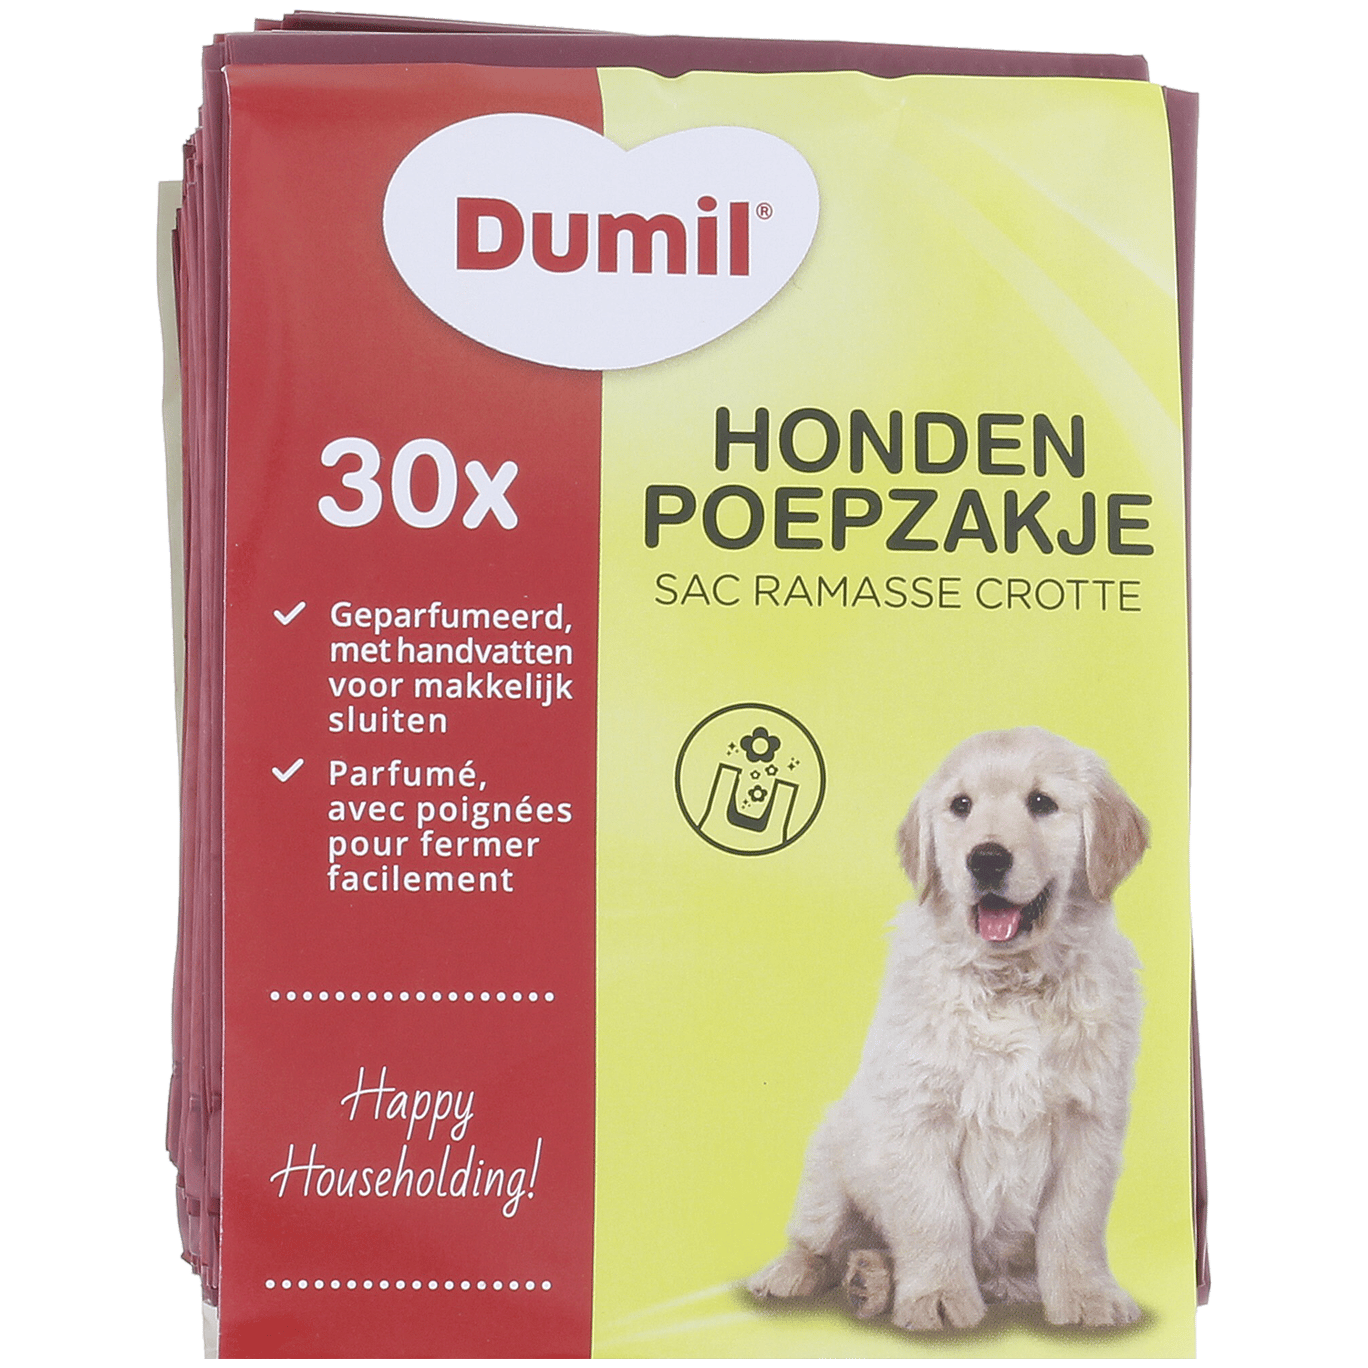 Bourgondië Doordeweekse dagen Nieuwjaar Dumil hondenpoepzakjes | Action.com